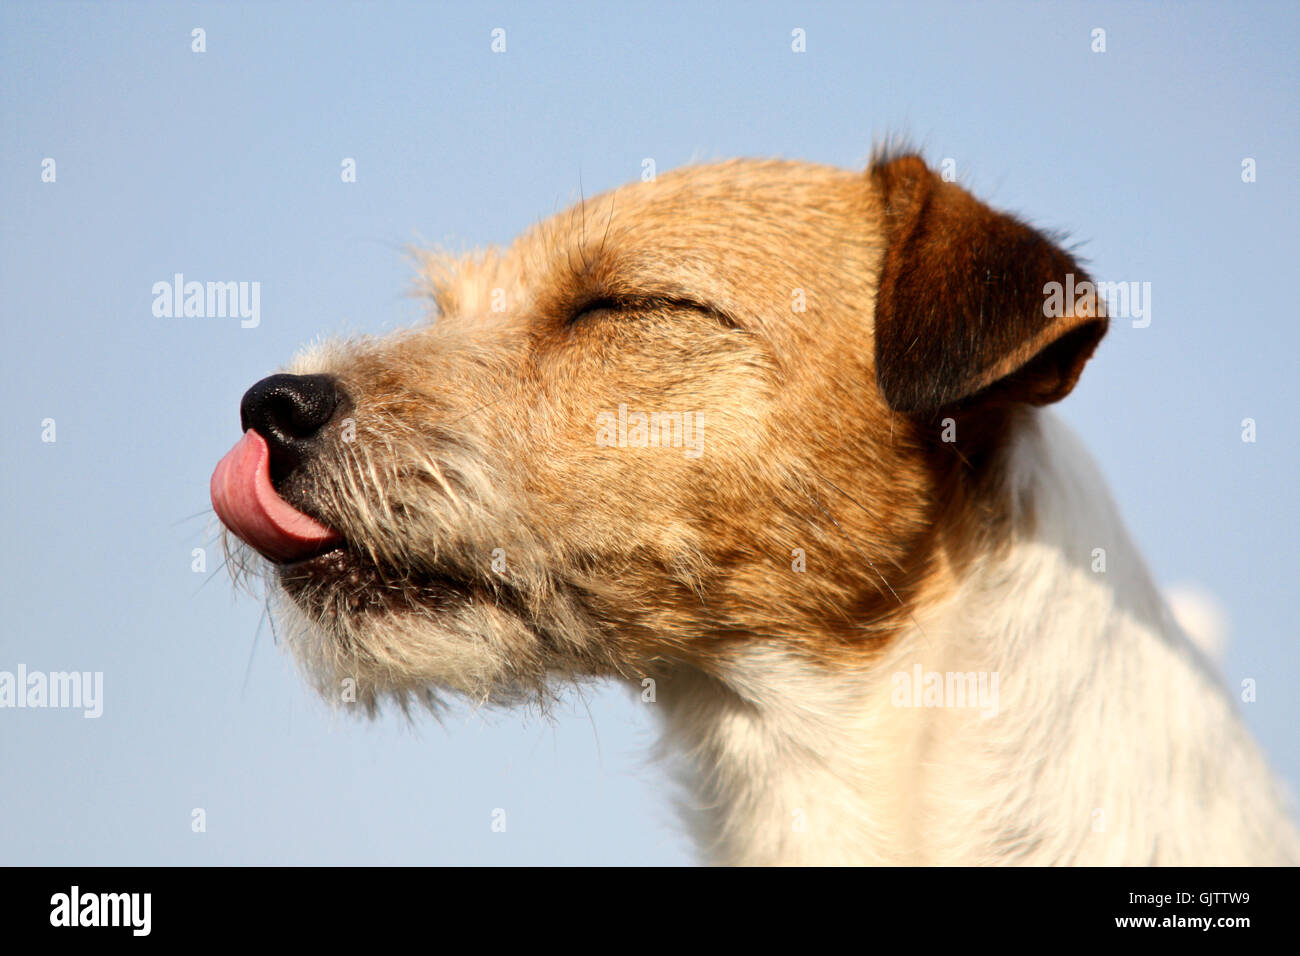 tongue portrait dog Stock Photo